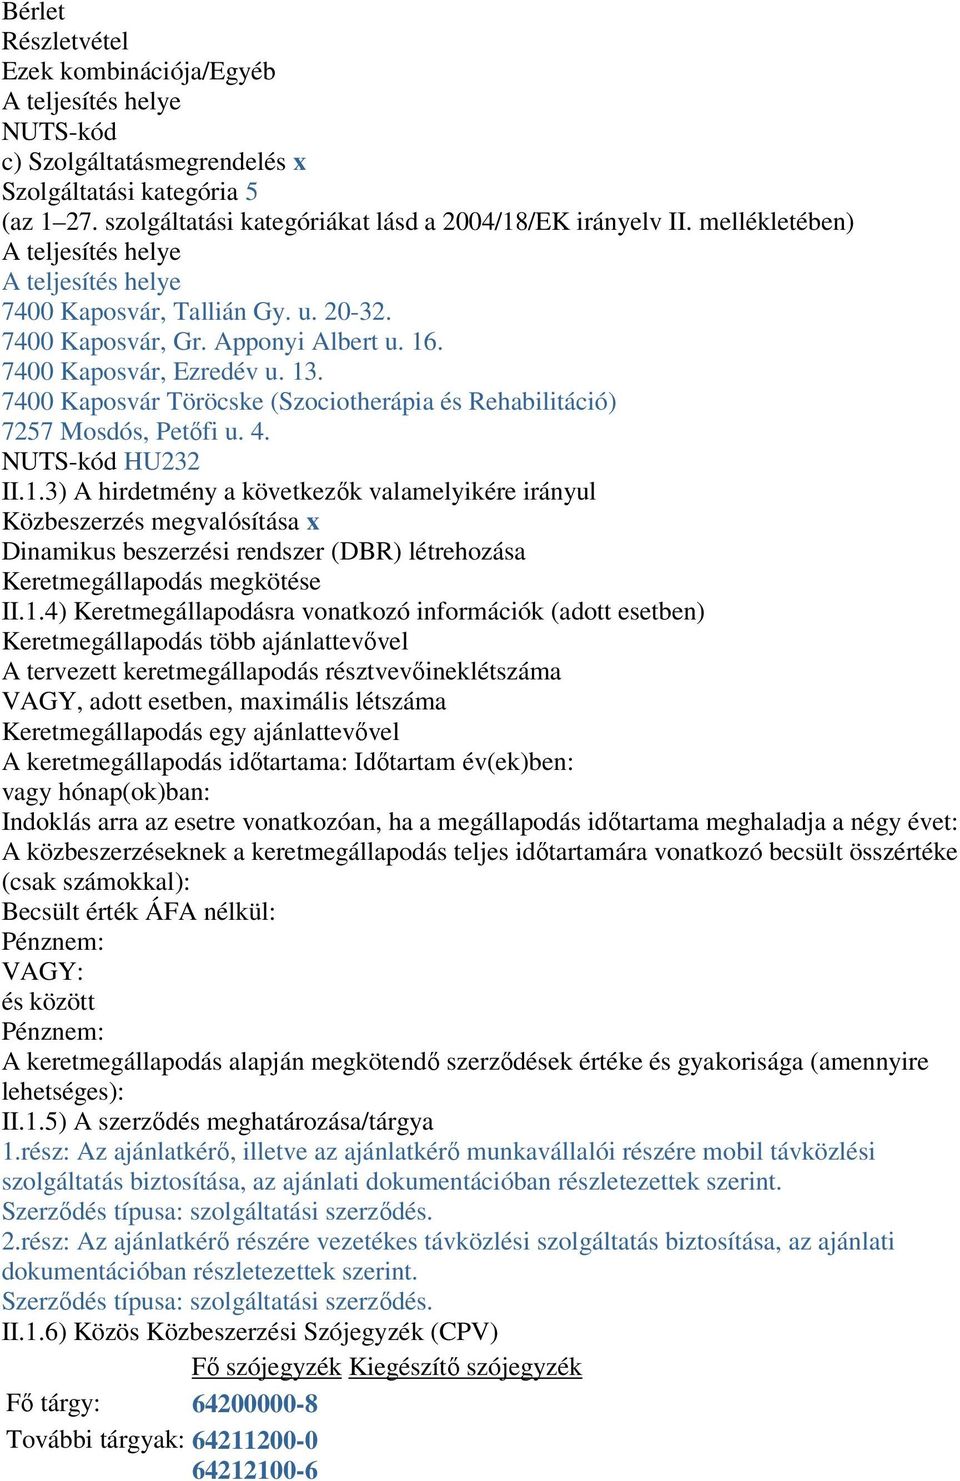 7400 Kaposvár Töröcske (Szociotherápia és Rehabilitáció) 7257 Mosdós, Petőfi u. 4. NUTS-kód HU232 II.1.